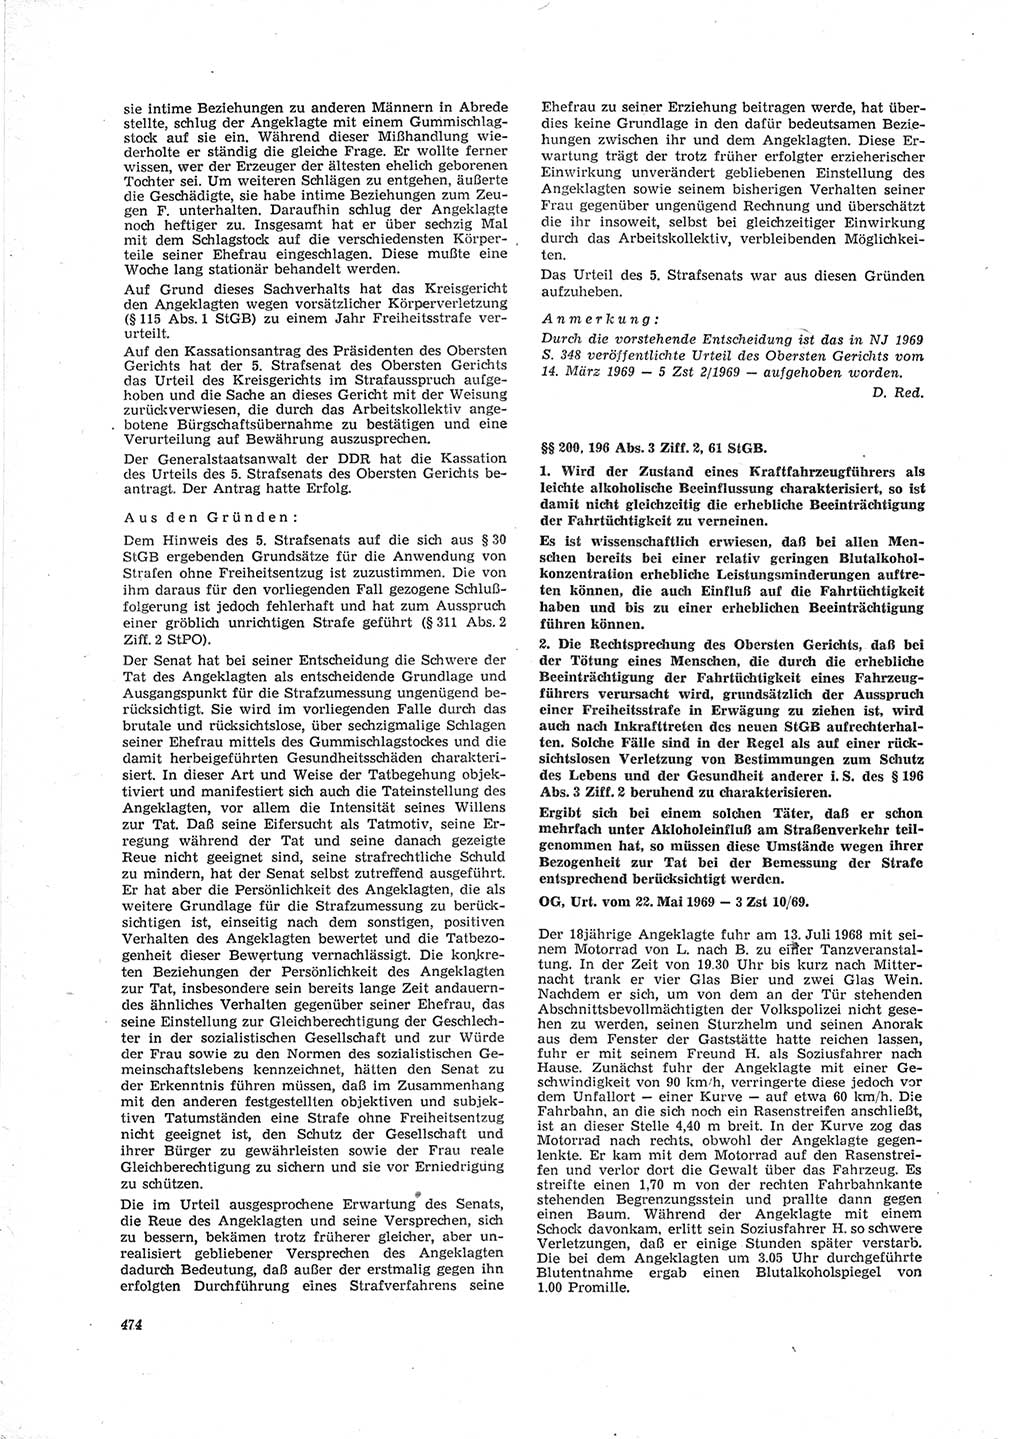 Neue Justiz (NJ), Zeitschrift für Recht und Rechtswissenschaft [Deutsche Demokratische Republik (DDR)], 23. Jahrgang 1969, Seite 474 (NJ DDR 1969, S. 474)